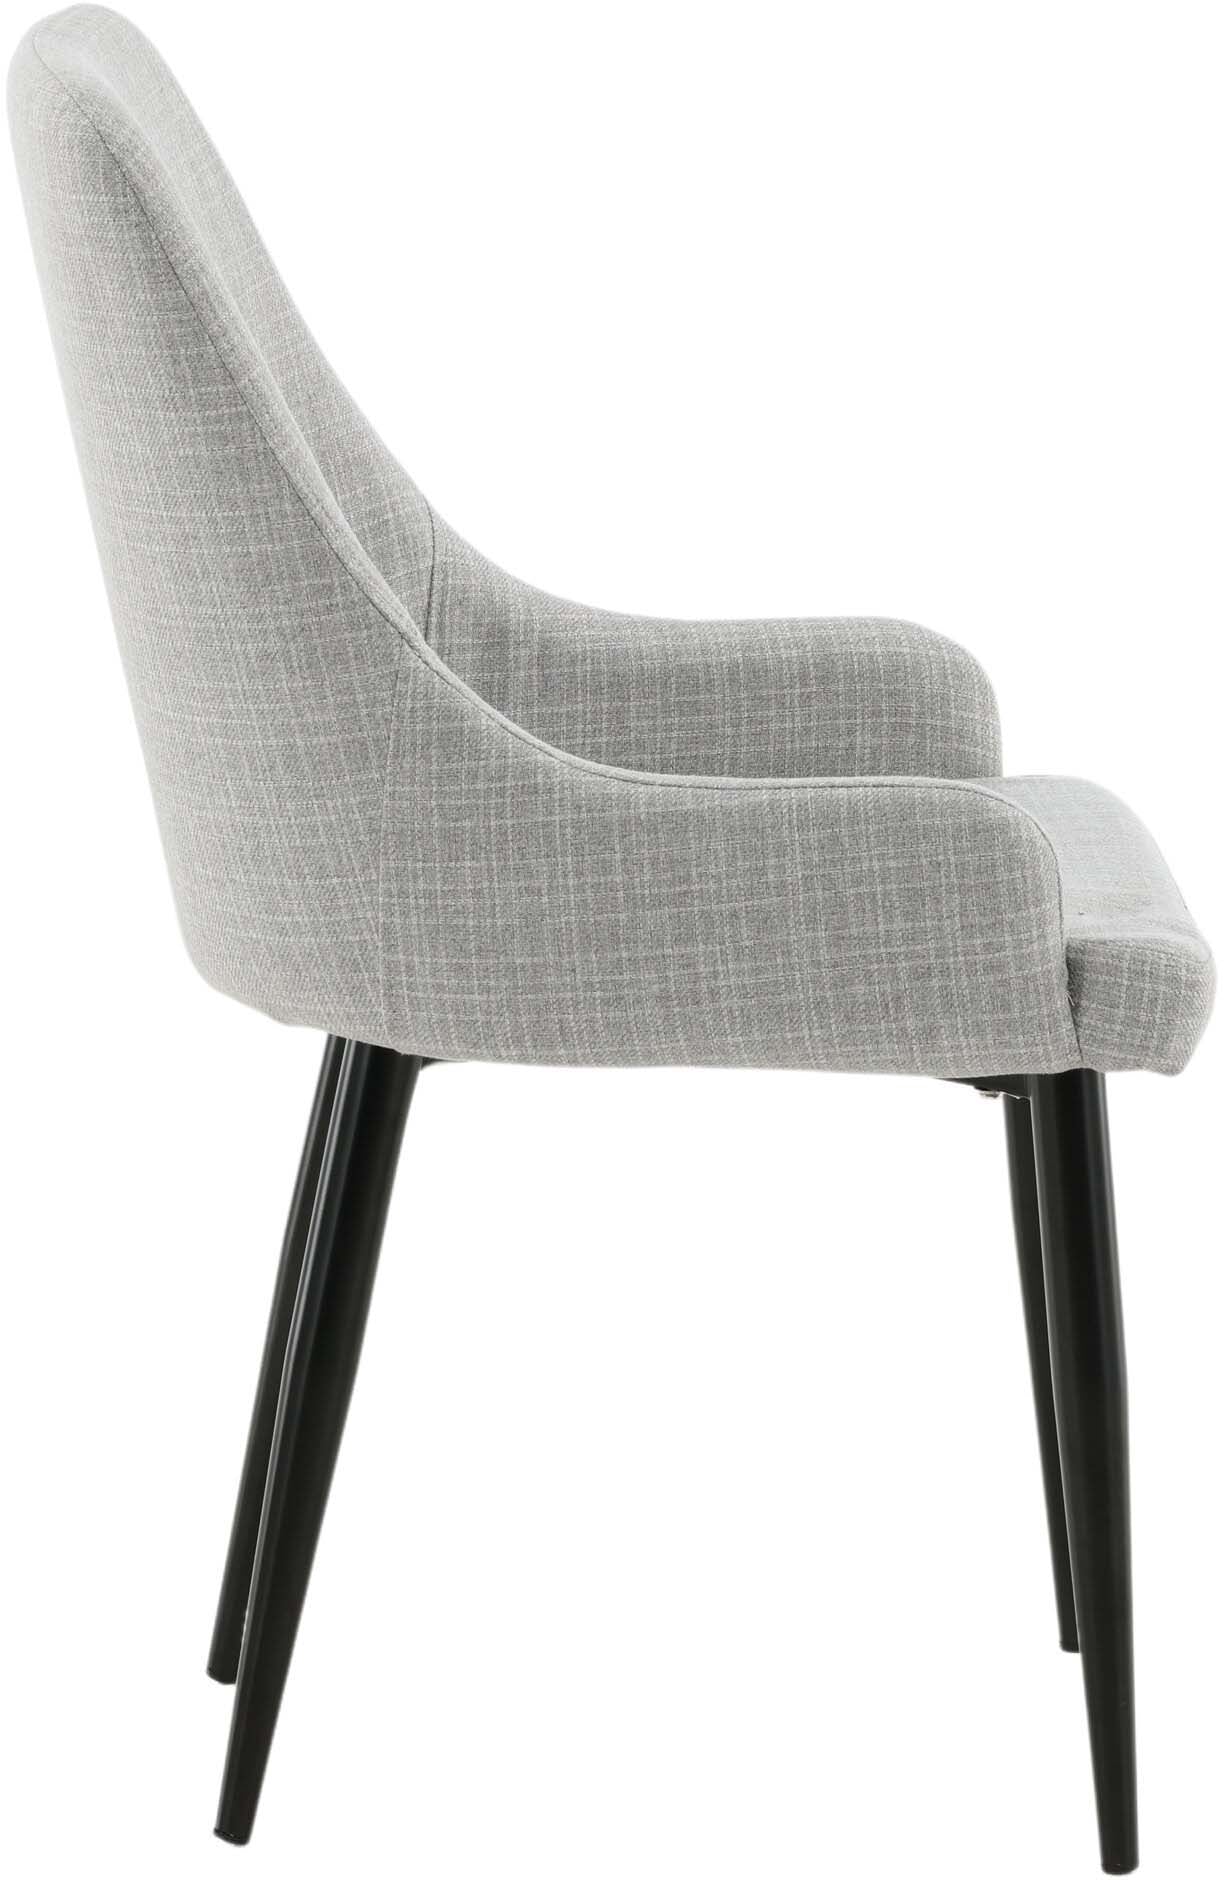 Plaza Stuhl in Hellgrau / Schwarz präsentiert im Onlineshop von KAQTU Design AG. Stuhl ist von Venture Home